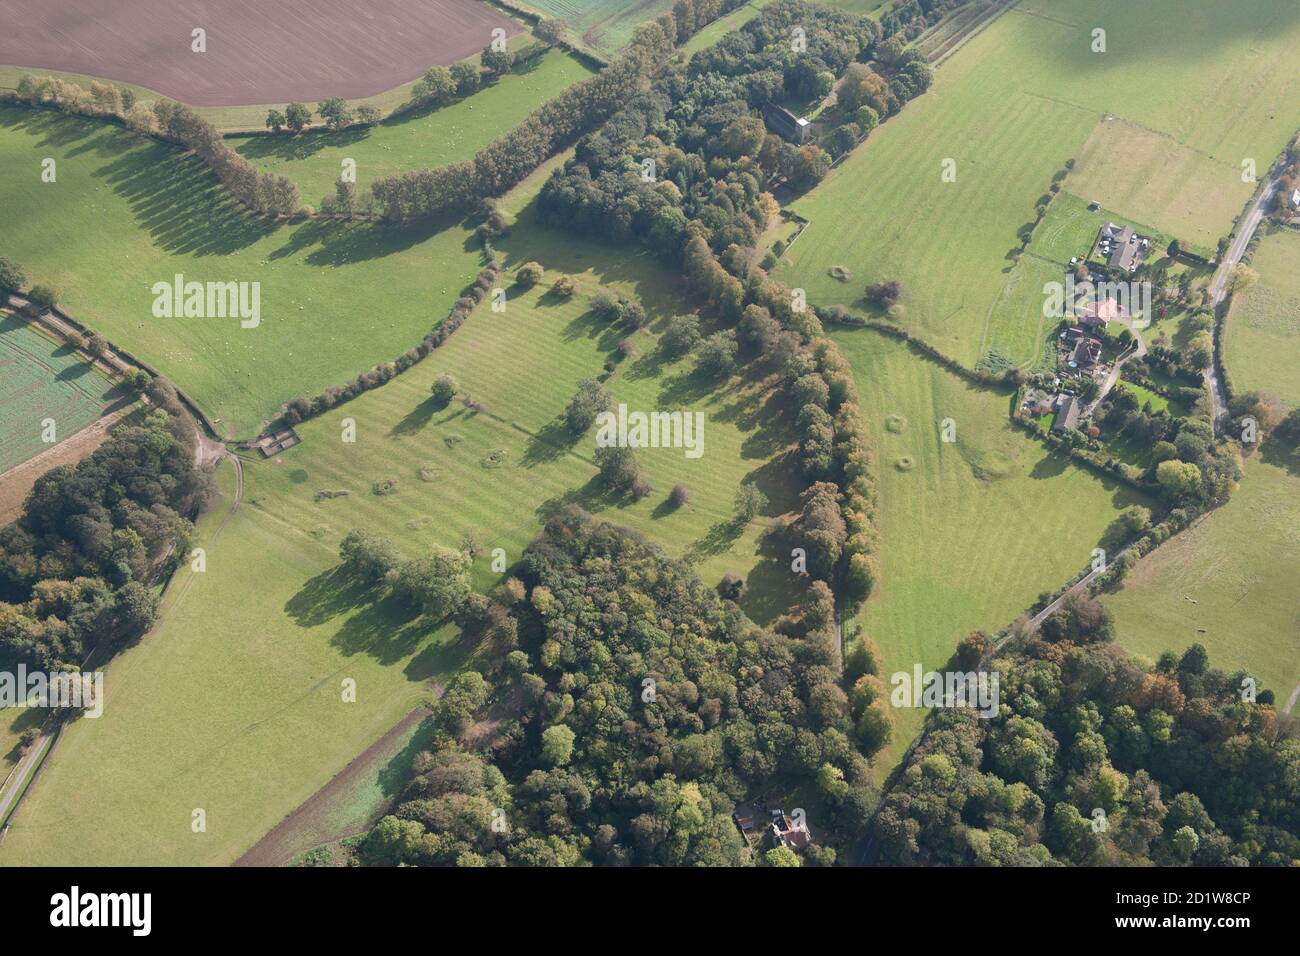 Stillgelegt Grubenschächte und Grat und Furche Erdarbeiten, Middleton Tyas, North Yorkshire. Luftaufnahme. Stockfoto